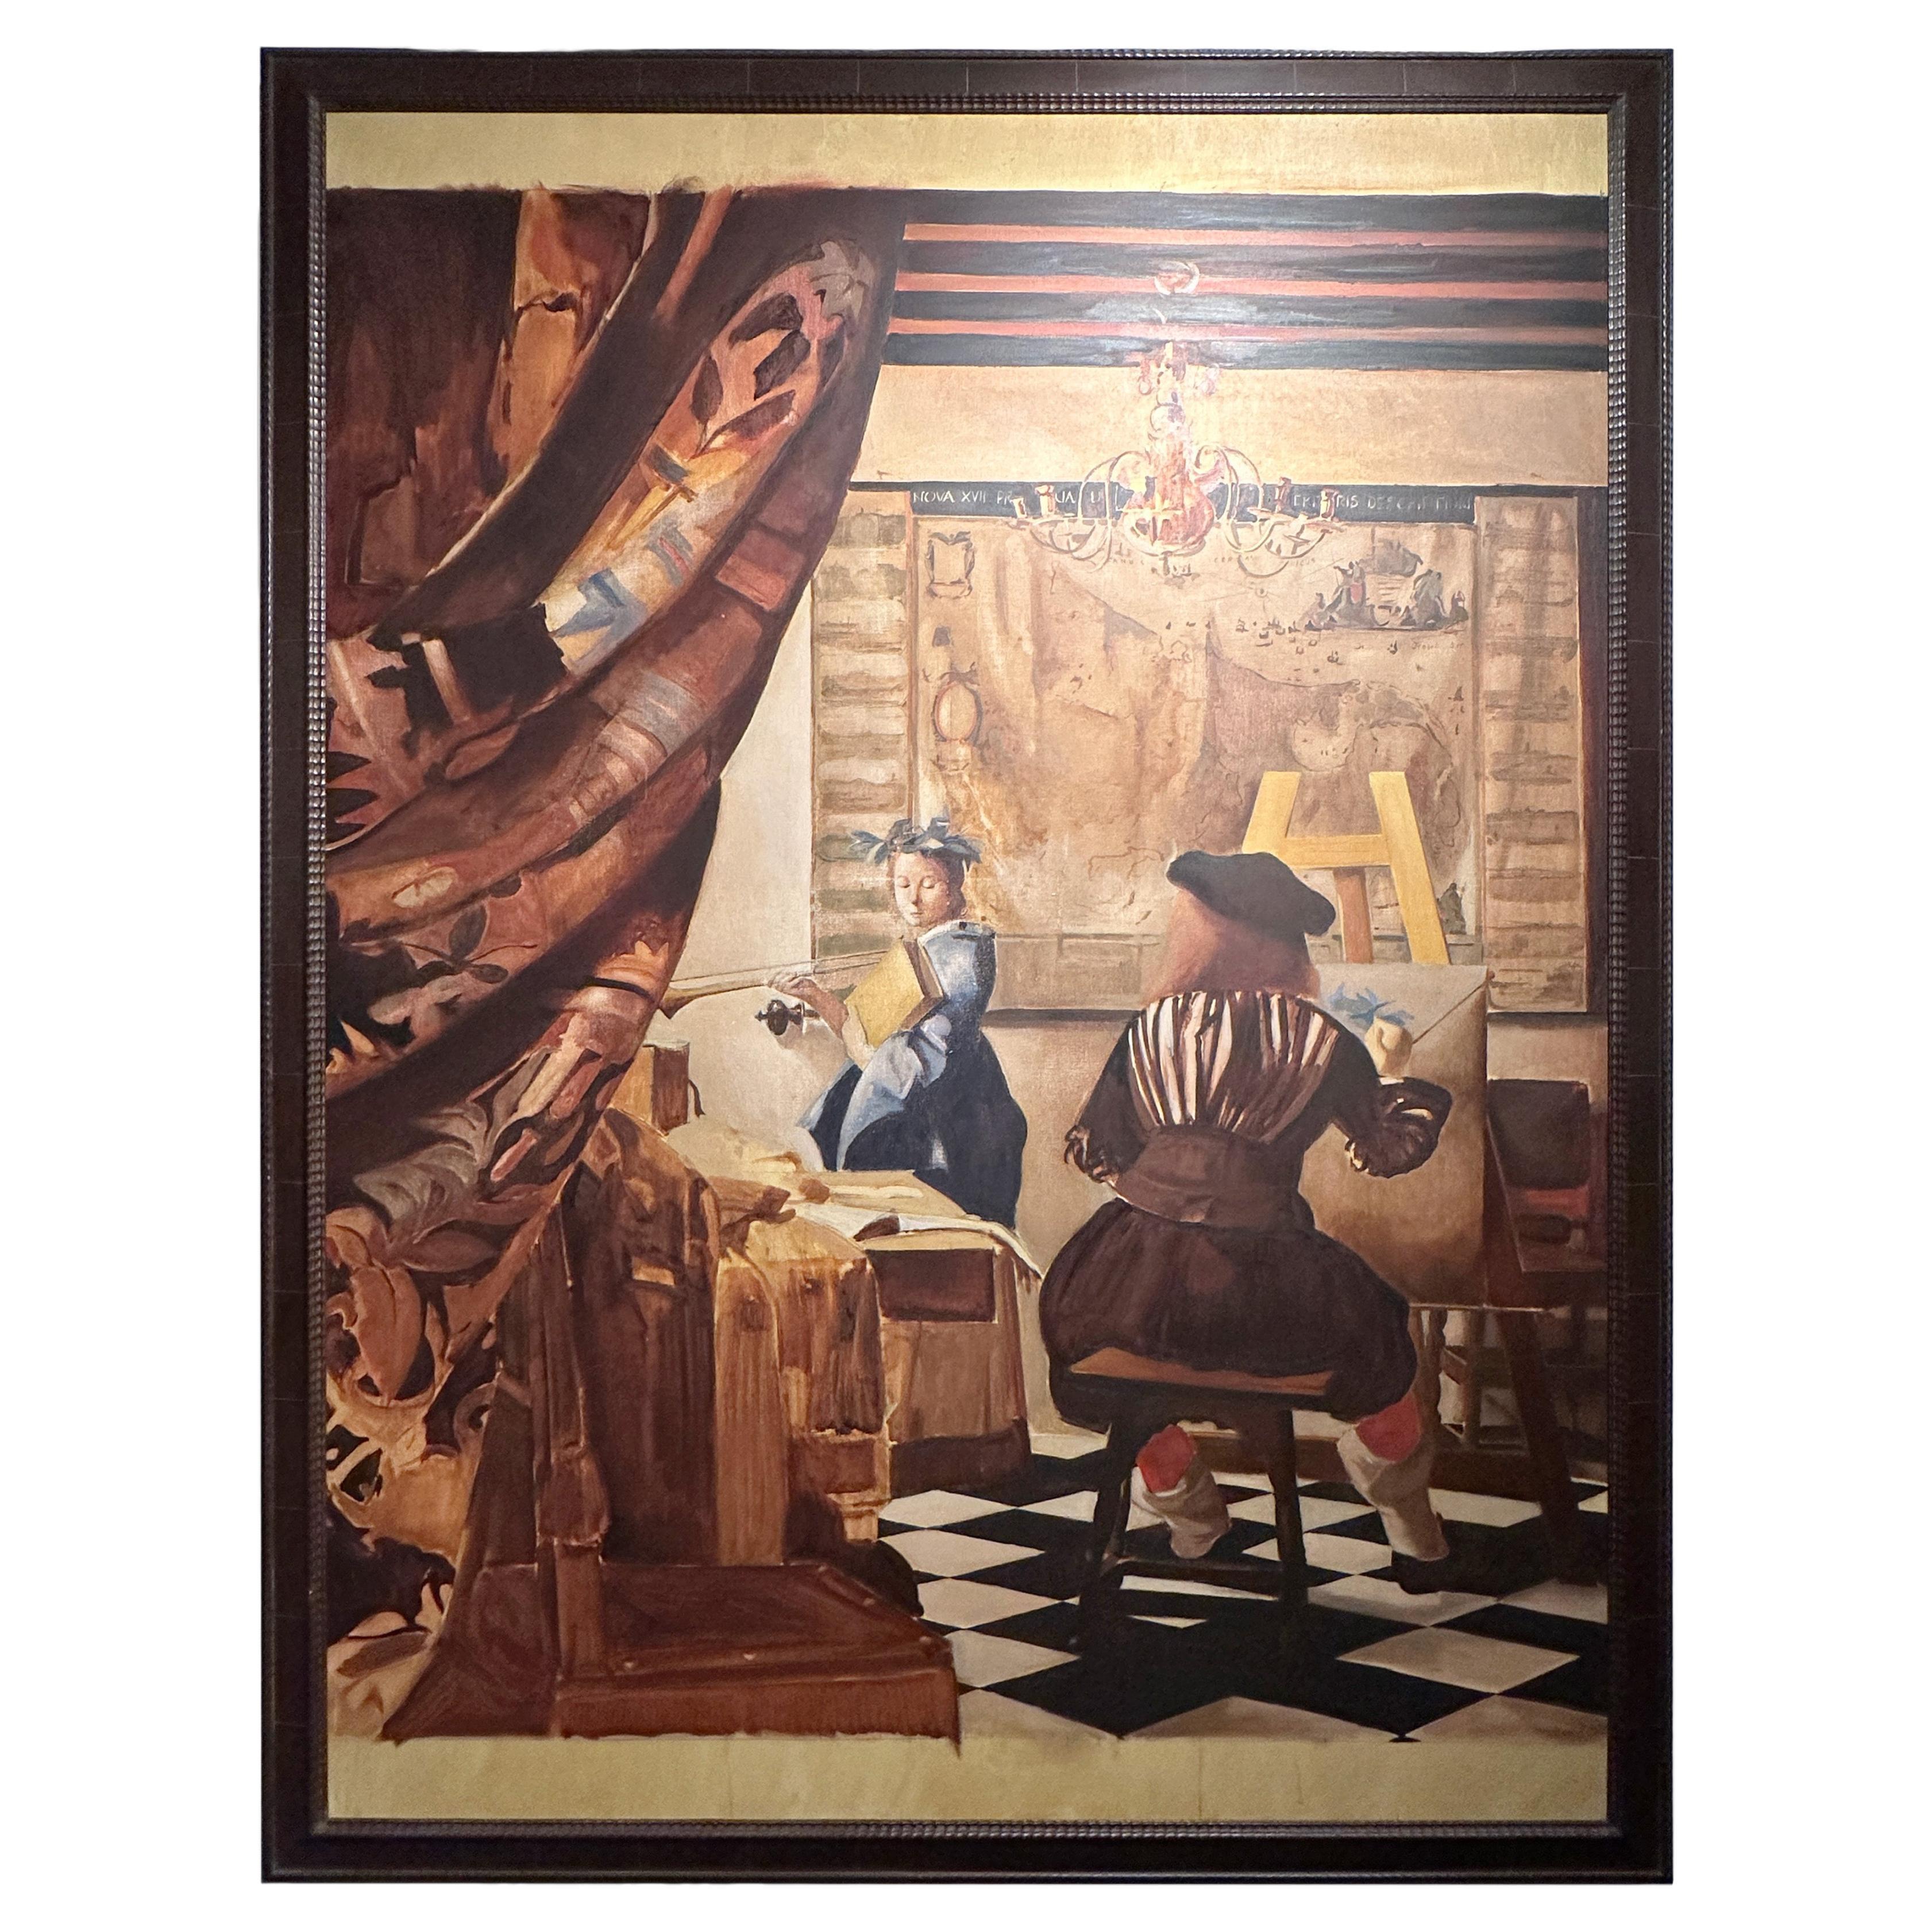 Santiago Uribe Holguin, Gemälde „El Gran Vermeer“, 1996-97